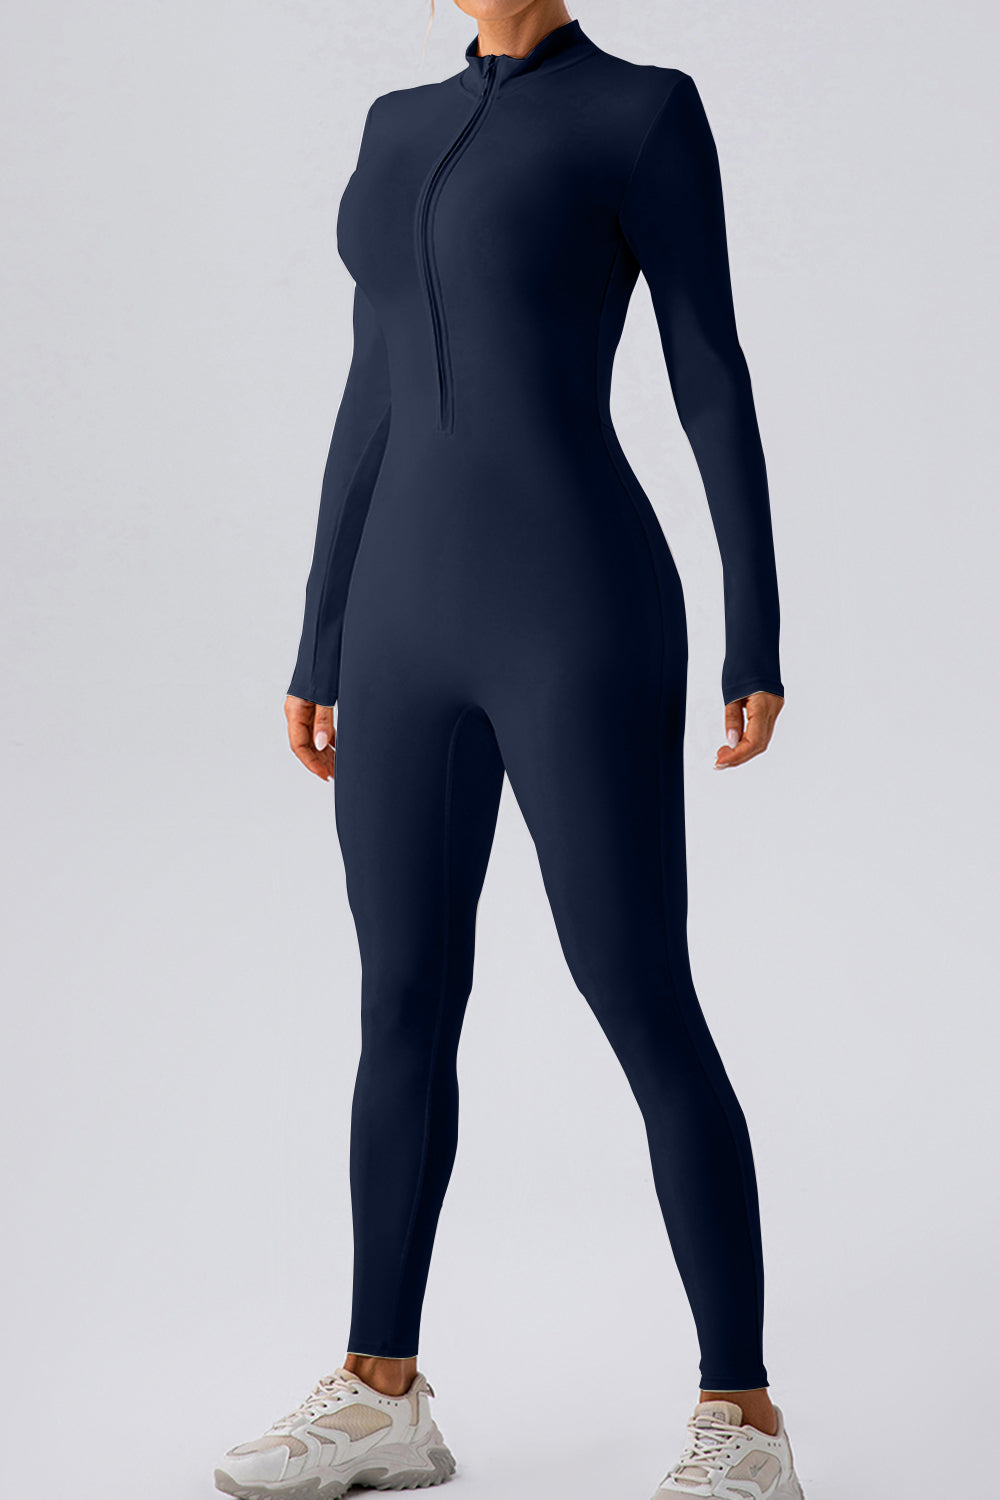 Half Zip Mock Neck Active Jumpsuit Sunset and Swim Navy S 